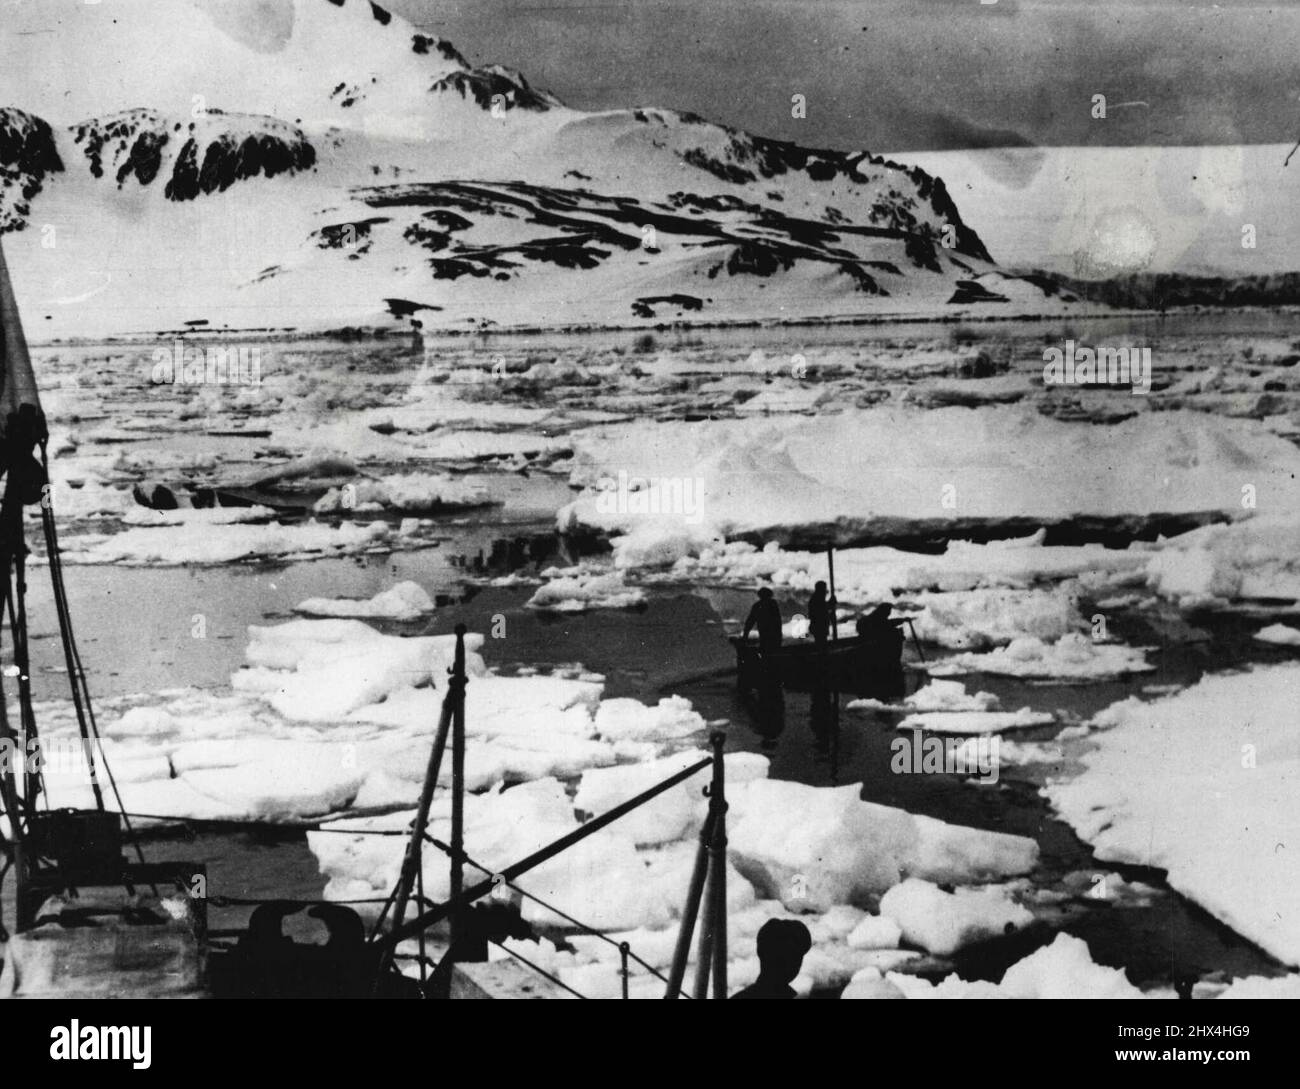 La frégate britannique remporte la bataille de dernière minute avec l'Antarctique. Sortez de Admiralty Bay. Les hommes de la base des dépendances de l'île Falkland à Admiralty Bay apprennent à 'parrow' pour trouver leur chemin de rivage par ***** . Ces photos exclusives, volées de l'Antarctique à Londres, sont les premières à atteindre la Grande-Bretagne montrant le succès de la lutte des minuscules frégates H.M.S. 'parrow' pour se briser de l'emprise de l'hiver antarctique. 04 mars 1949. Banque D'Images